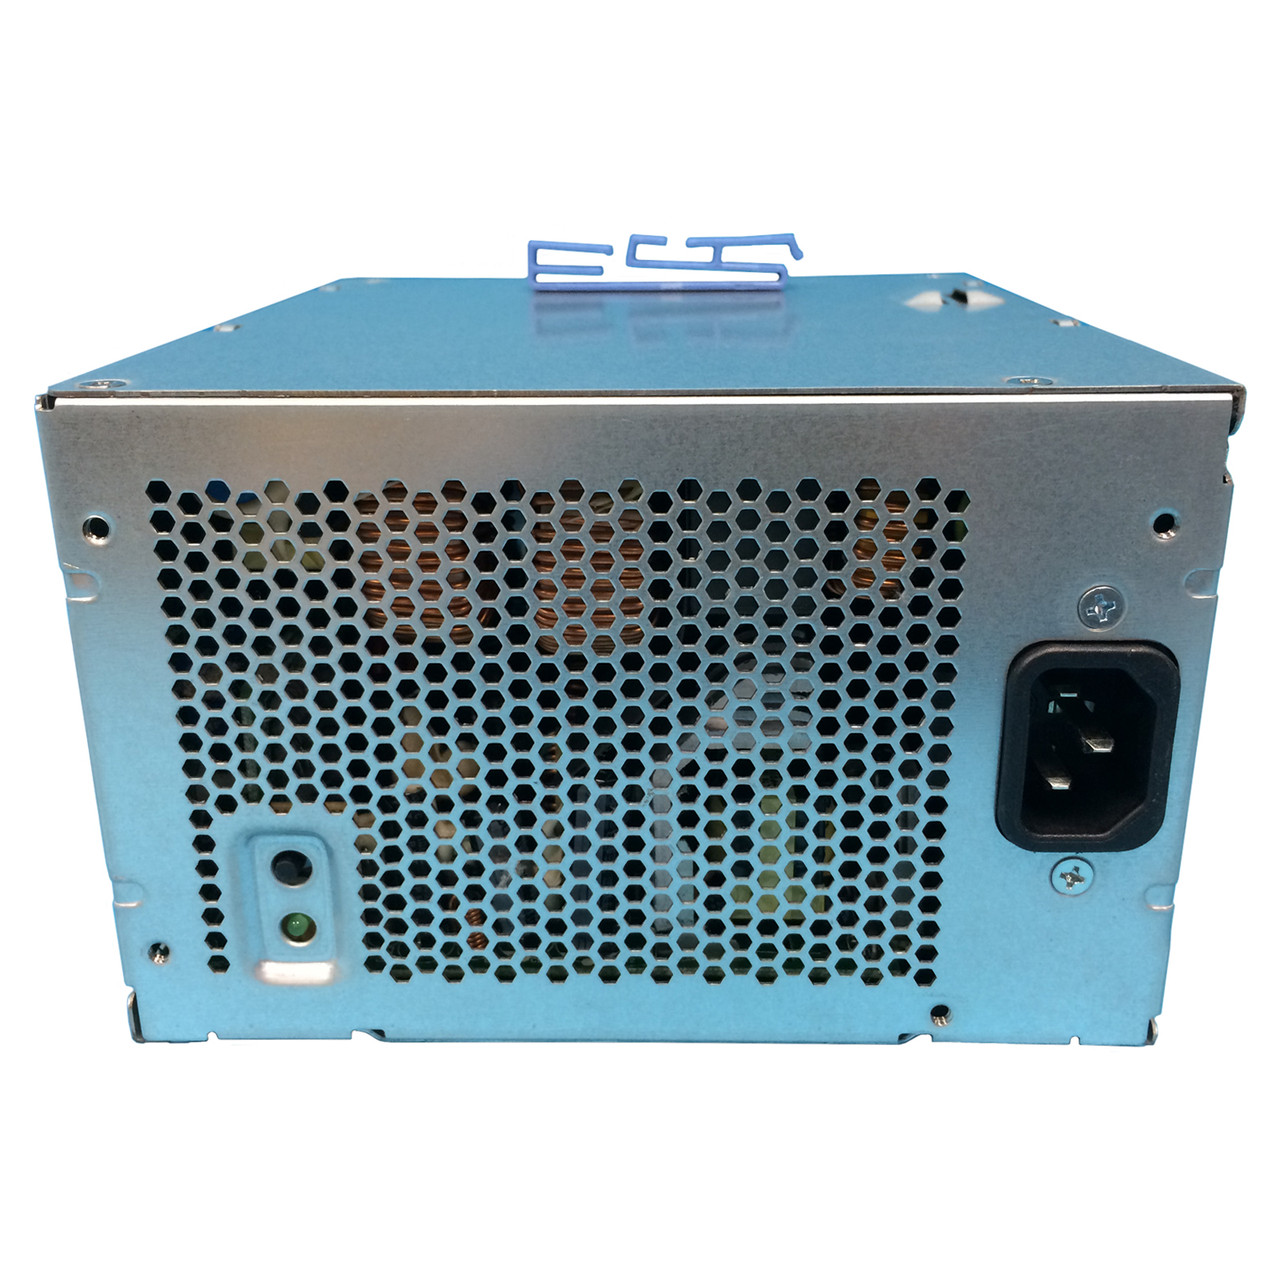 和風 Dell Precision T5400 875W SWCH Workstation Power Supply N875E-00 GM869  YN642 並行輸入品